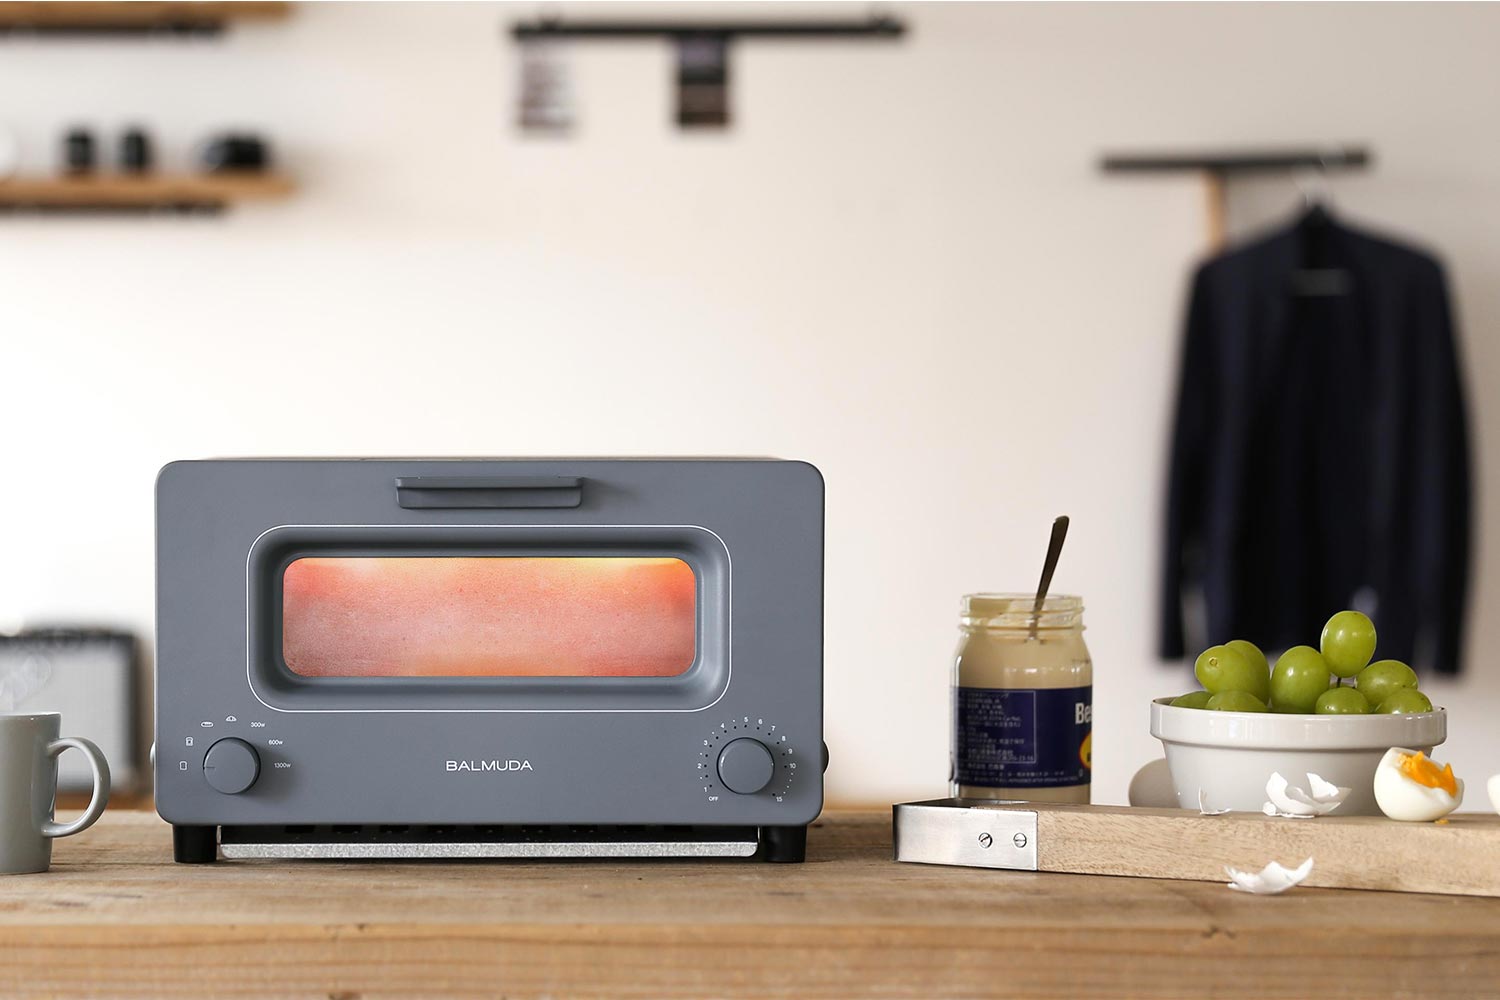 BALMUDA The Toaster | グッドデザイン金賞を受賞した「モダンクラシック」なスチームオーブントースター | MONOTE【モノート】